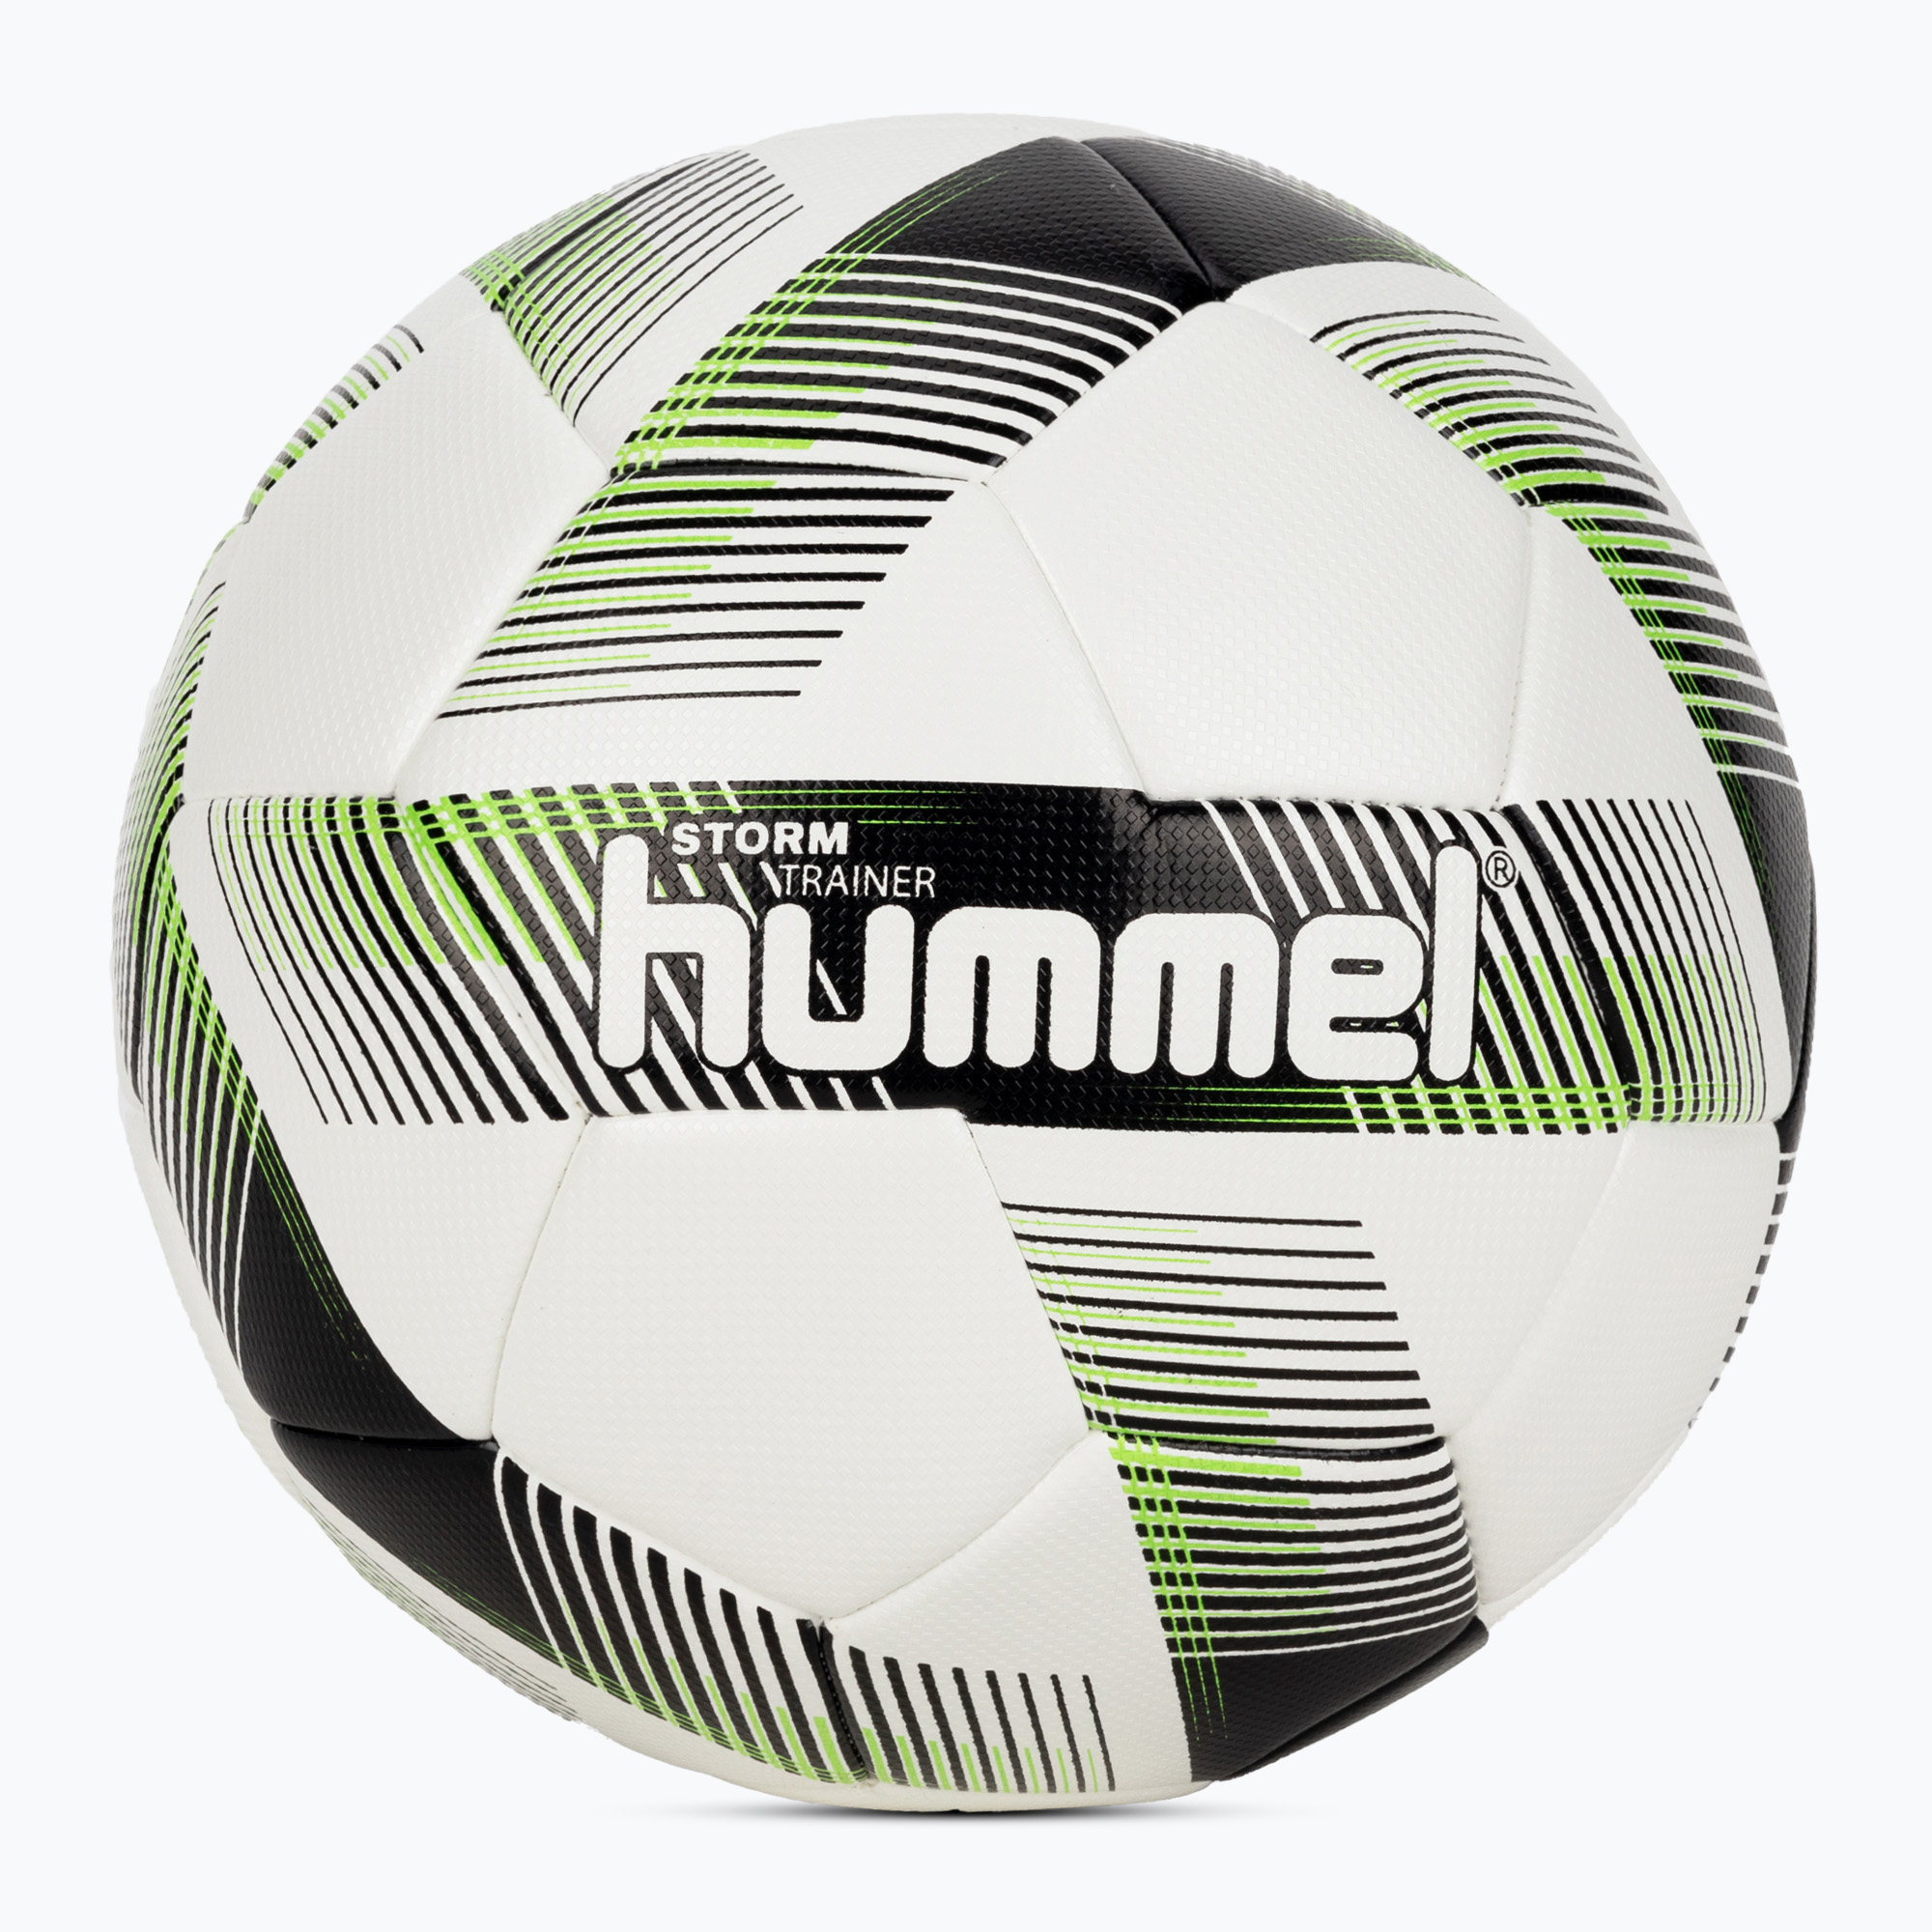 Hummel Storm Trainer FB футболна топка бяло/черно/зелено размер 4